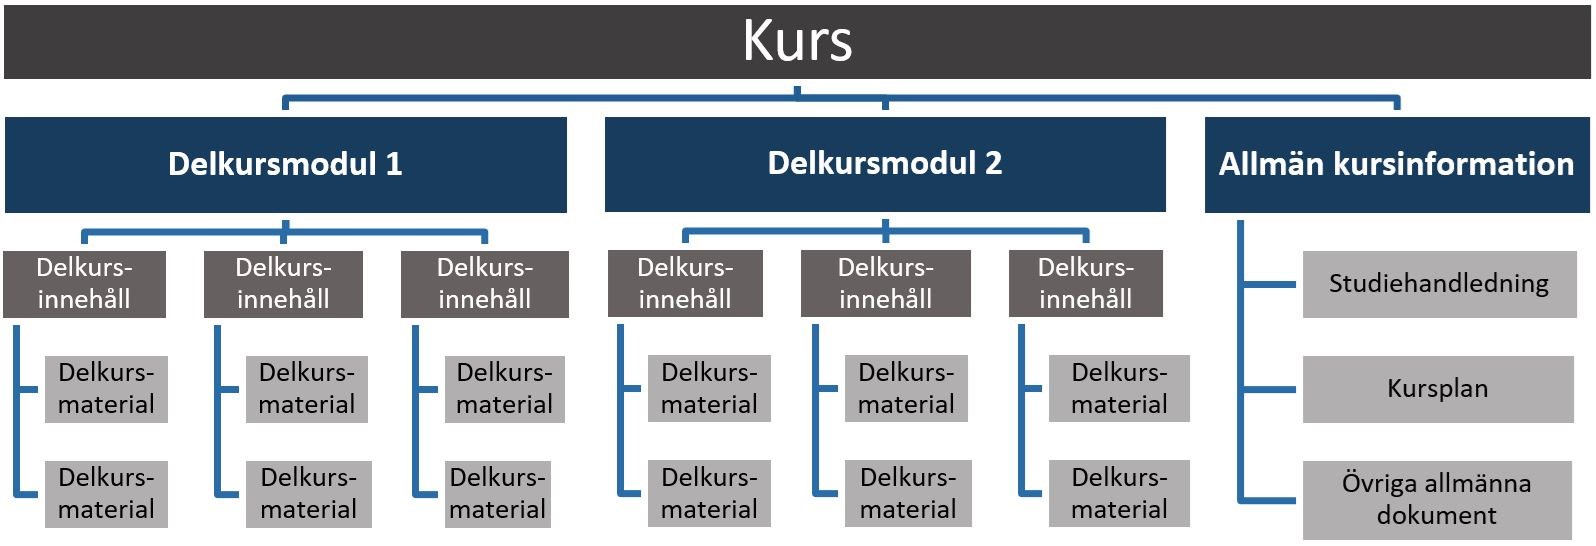 Kurs organiseras enligt följande struktur: Kurs > Delkursmodul > Delkursinnehåll > Delkursmaterial